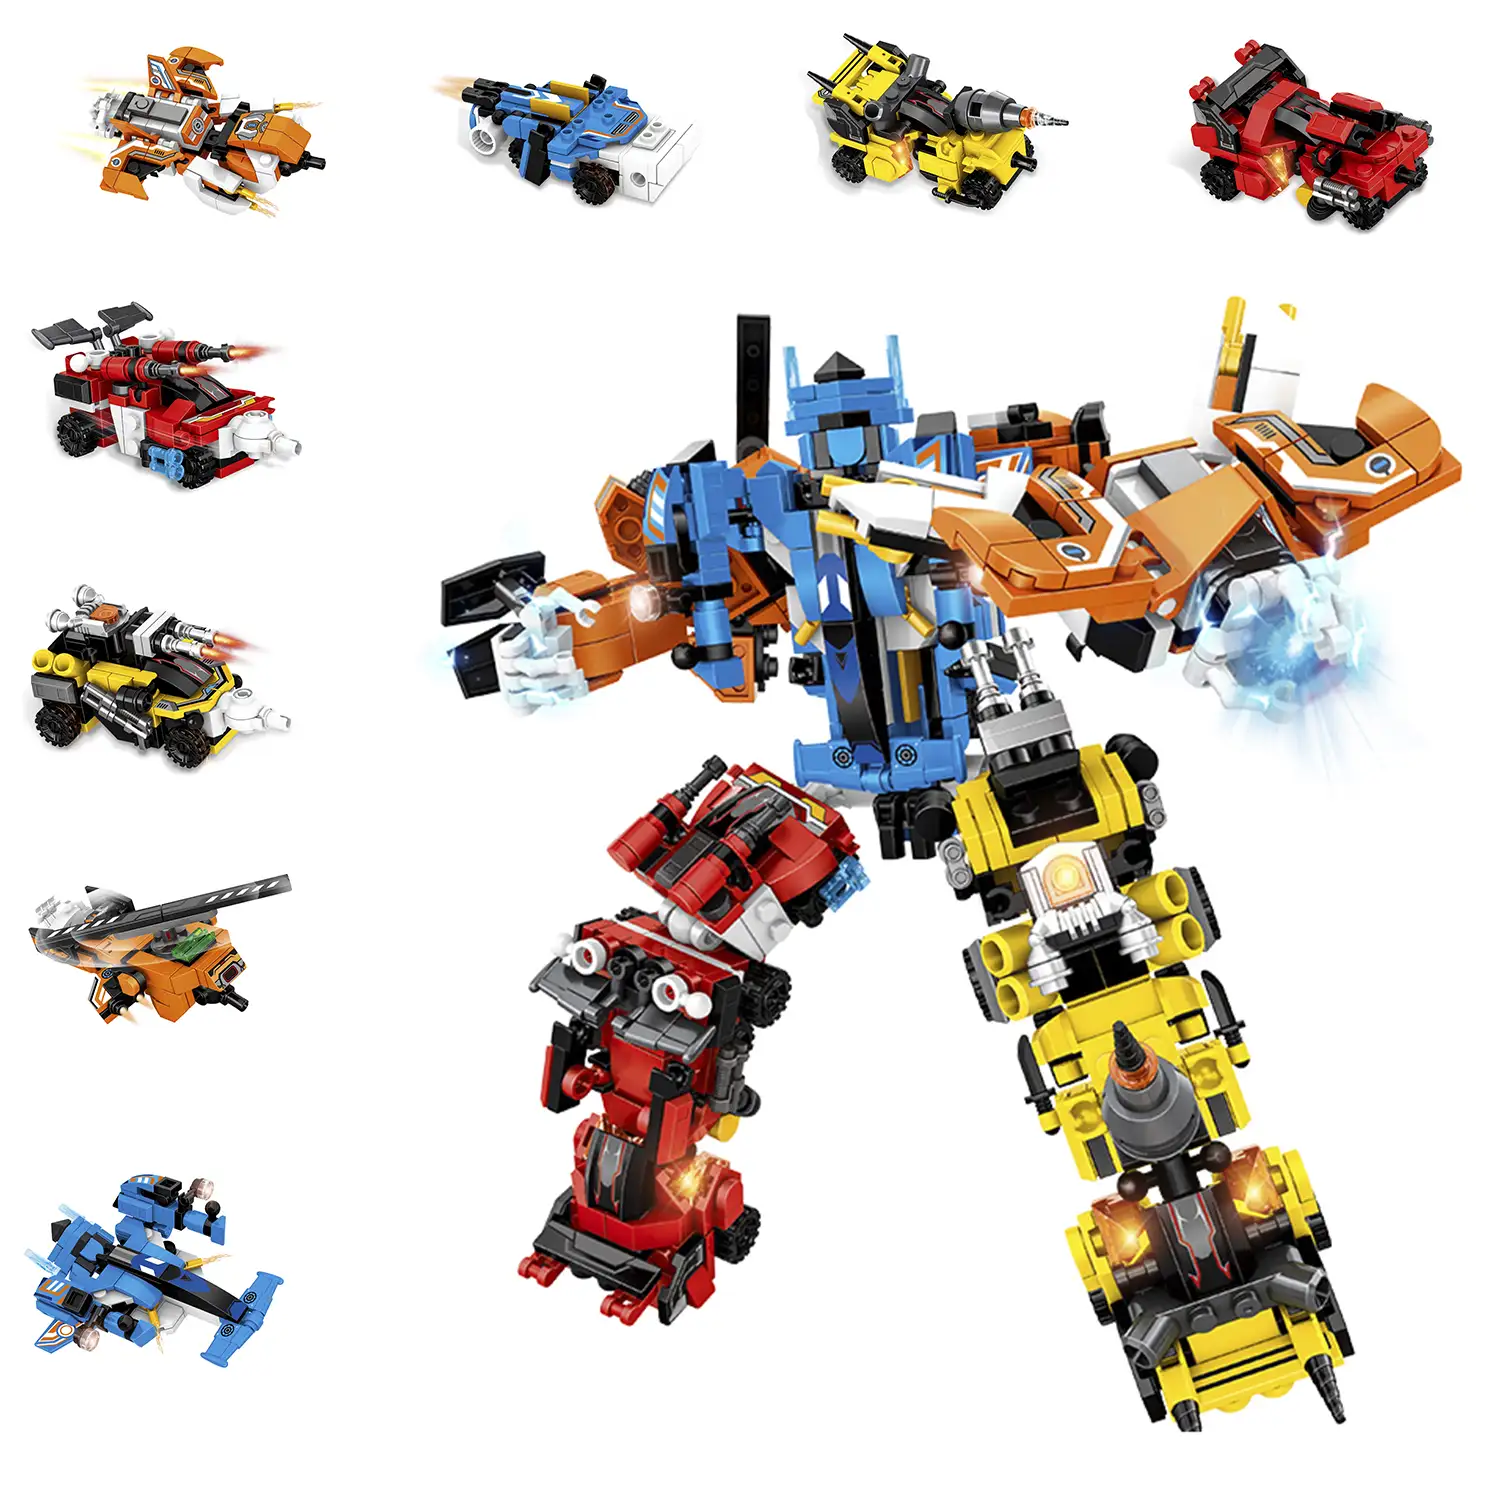 Robot mech 8 en 1 para construir, 741 piezas. Construye 8 modelos individuales con 3 formas cada uno.